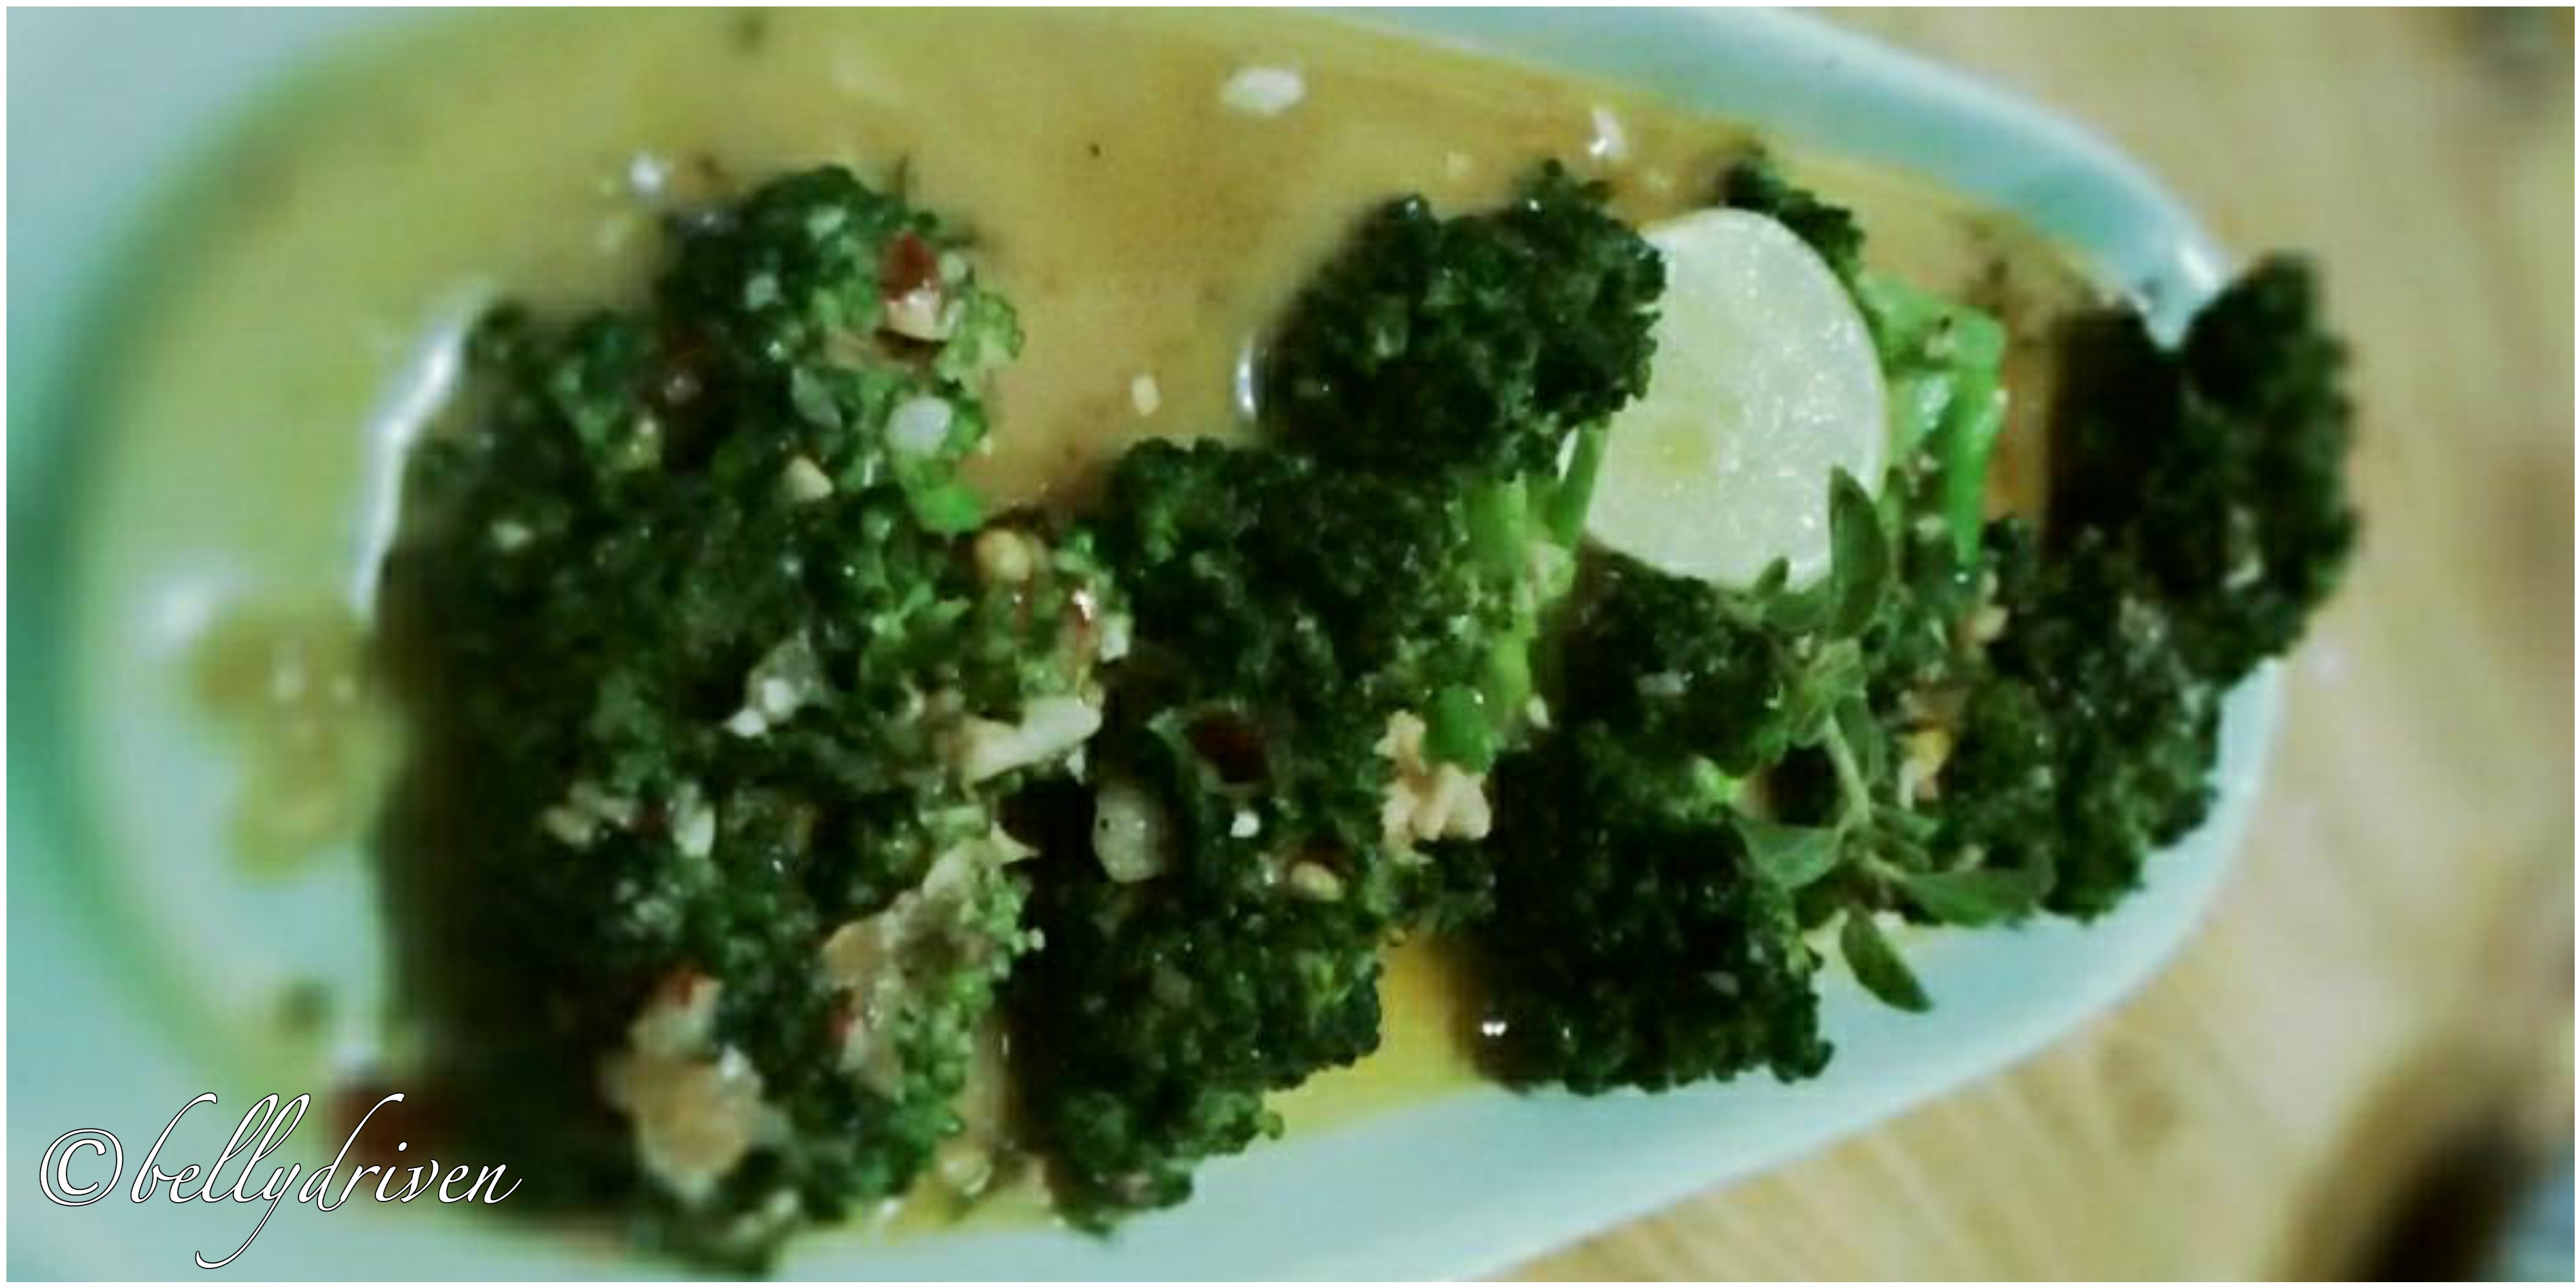 Broccolli aglio oilio_bellydriven